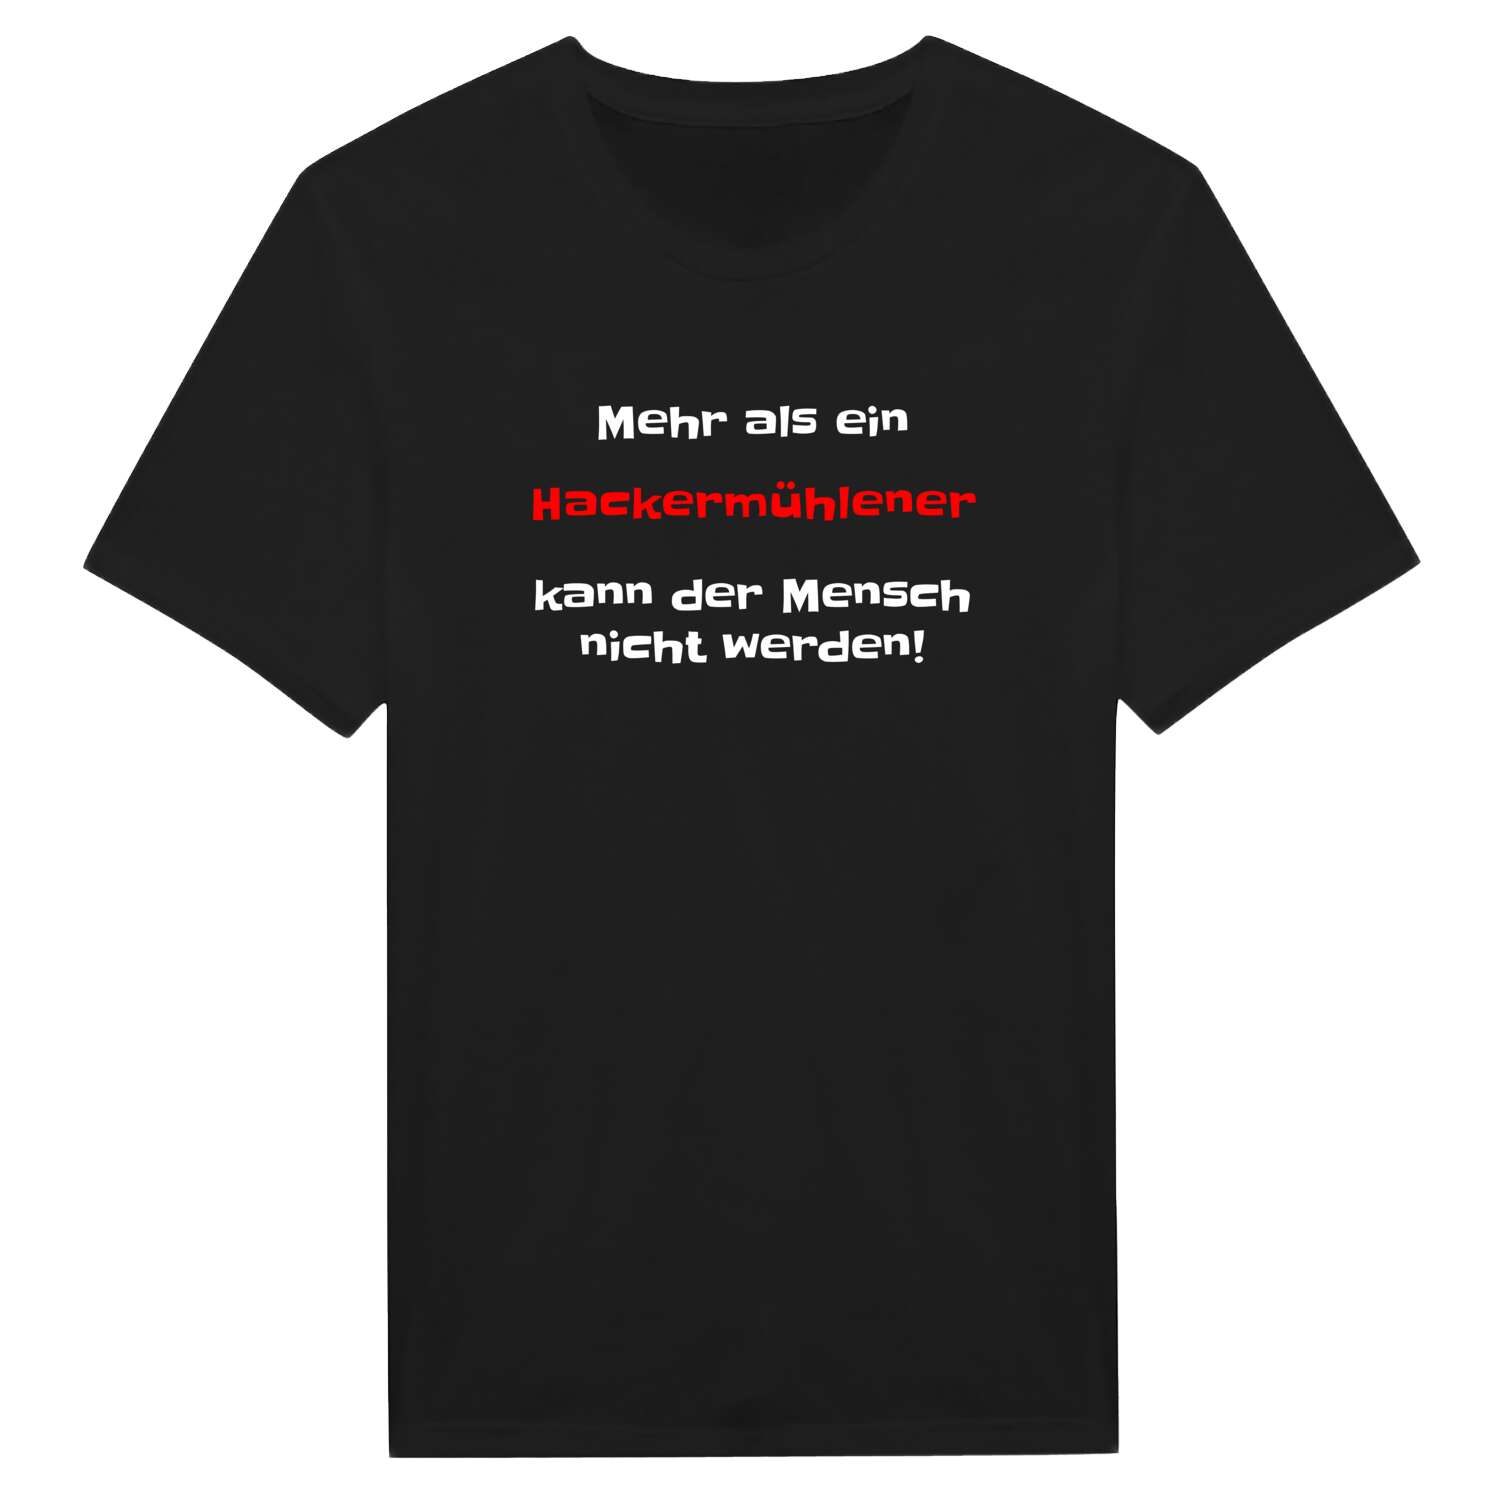 Hackermühle T-Shirt »Mehr als ein«